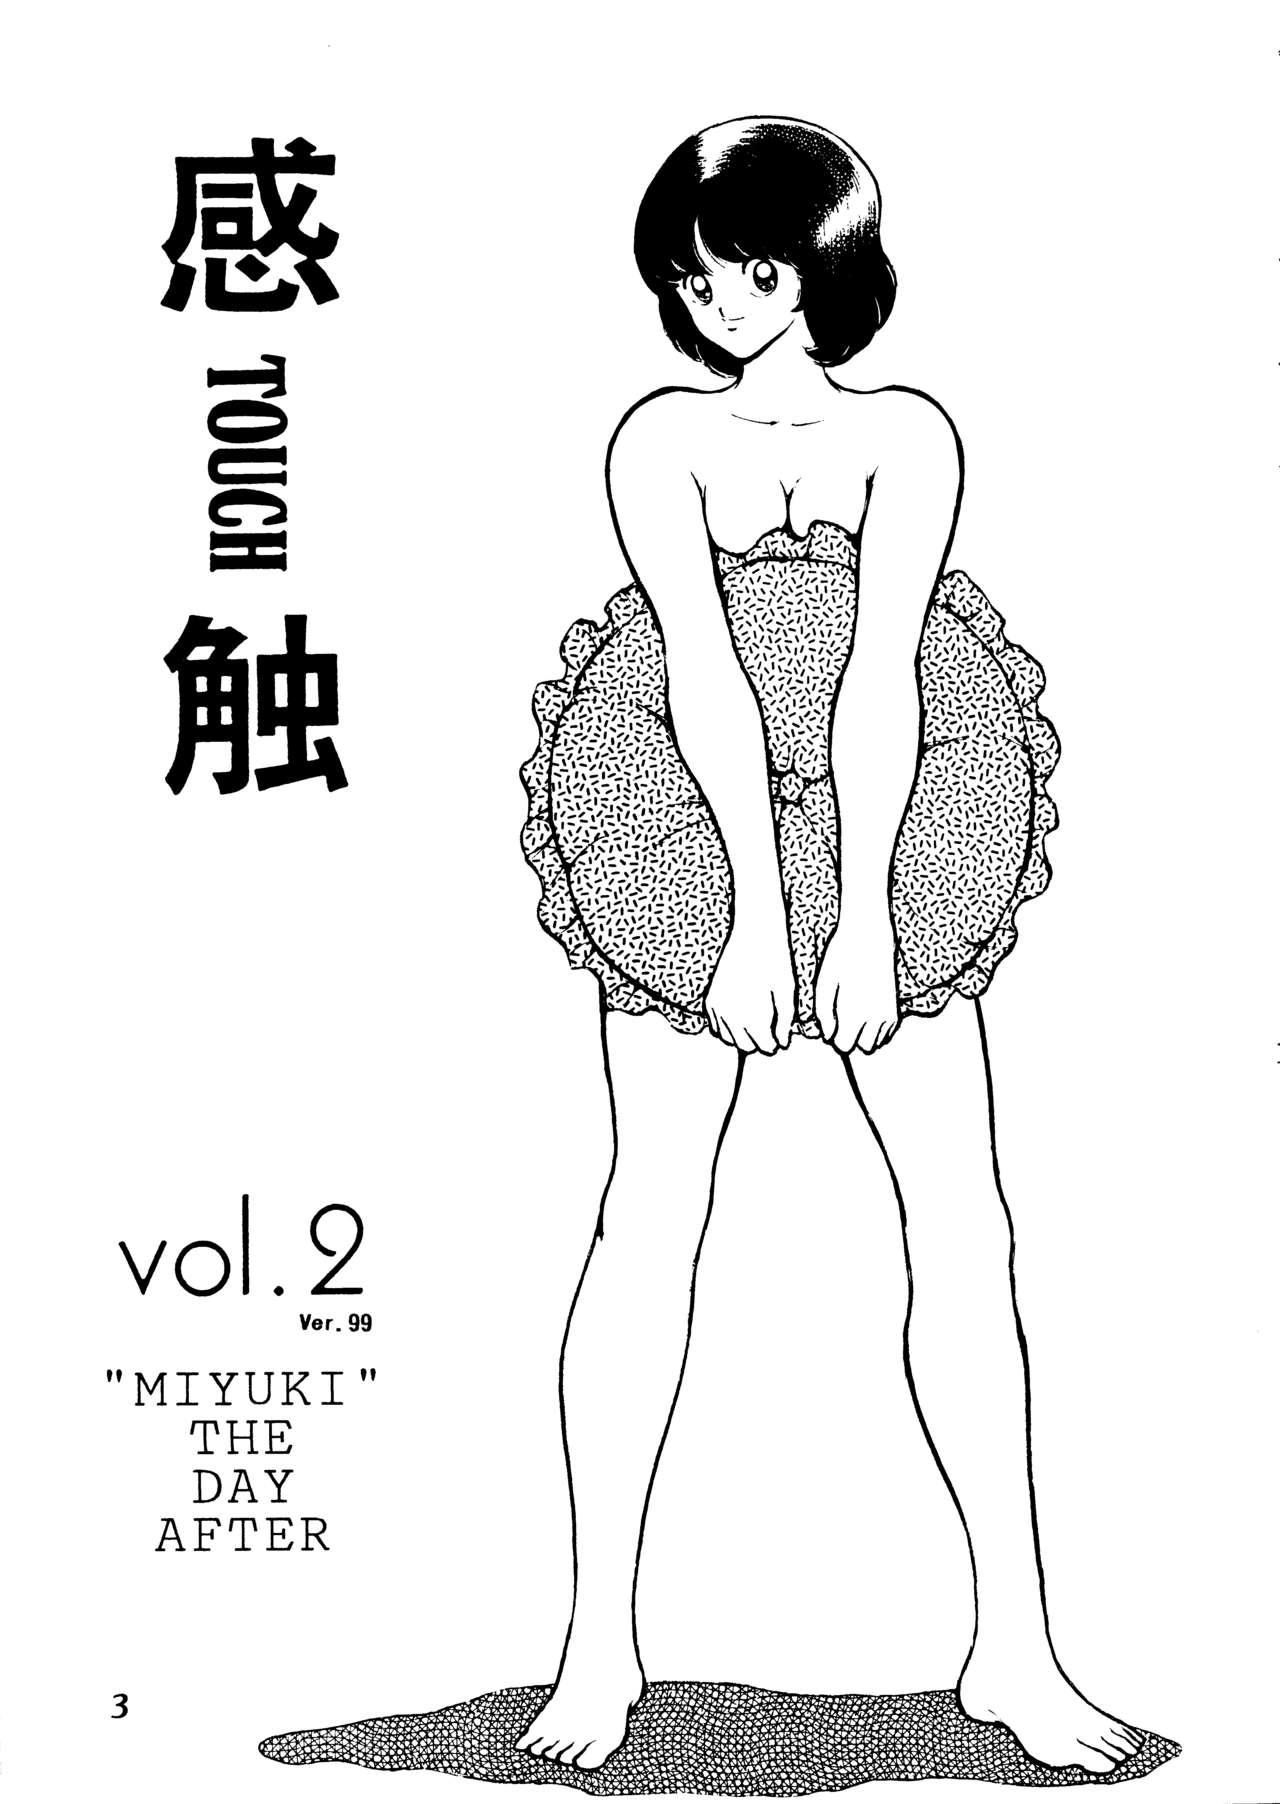 Home Kanshoku Touch vol.2 ver.99 - Miyuki Outdoor - Page 2